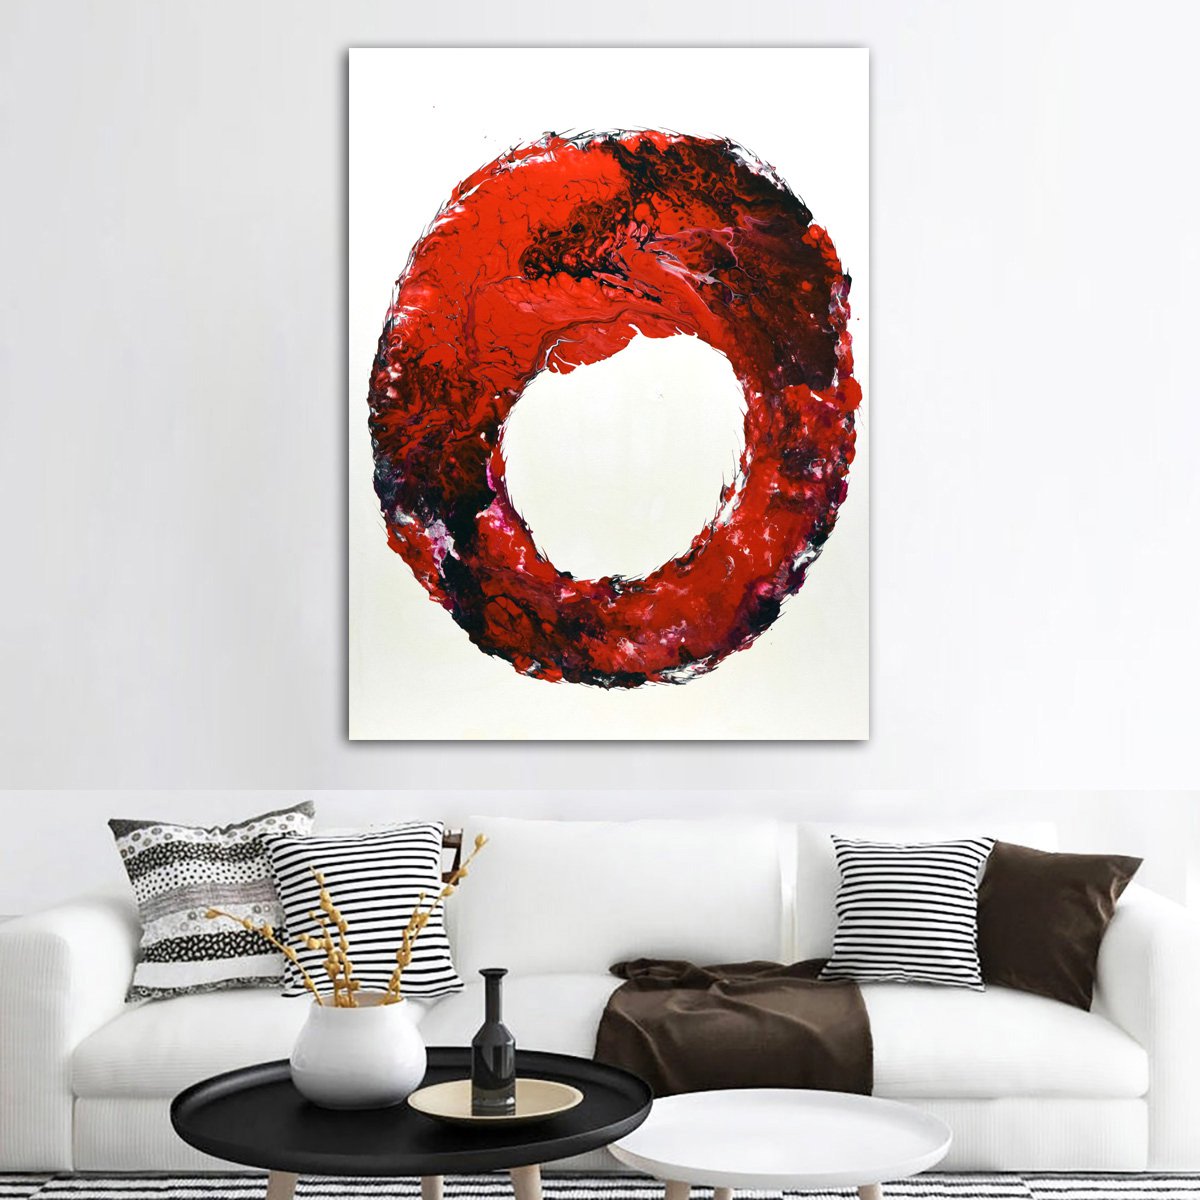 Red Circle - Large Abstract painting by Nataliya Stupak